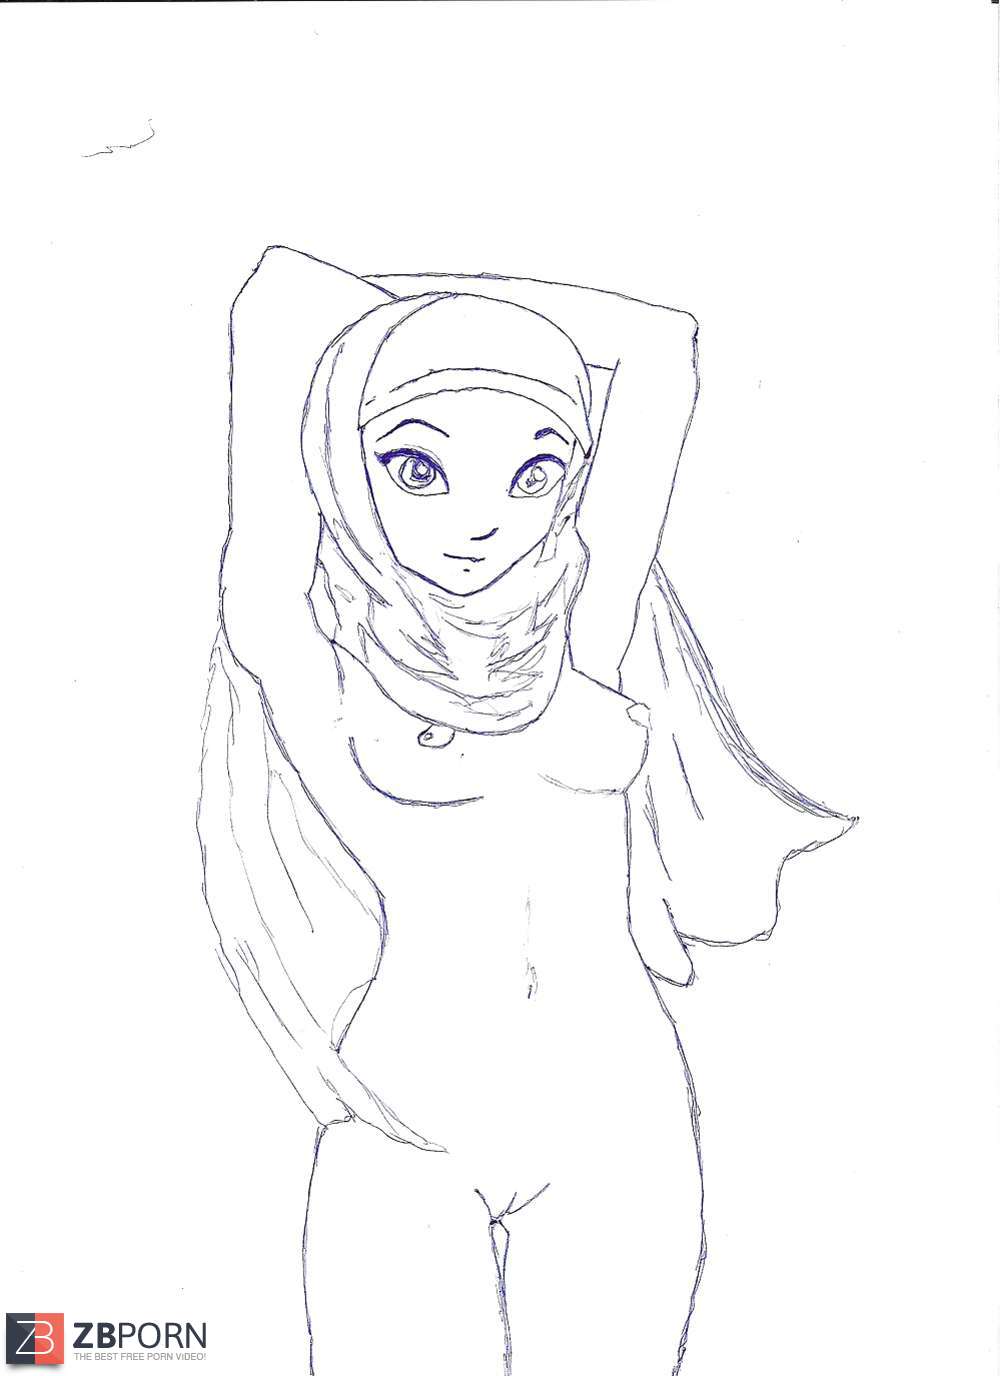 Hijab Toon Porn - Hijab Muslim Cartoon / ZB Porn